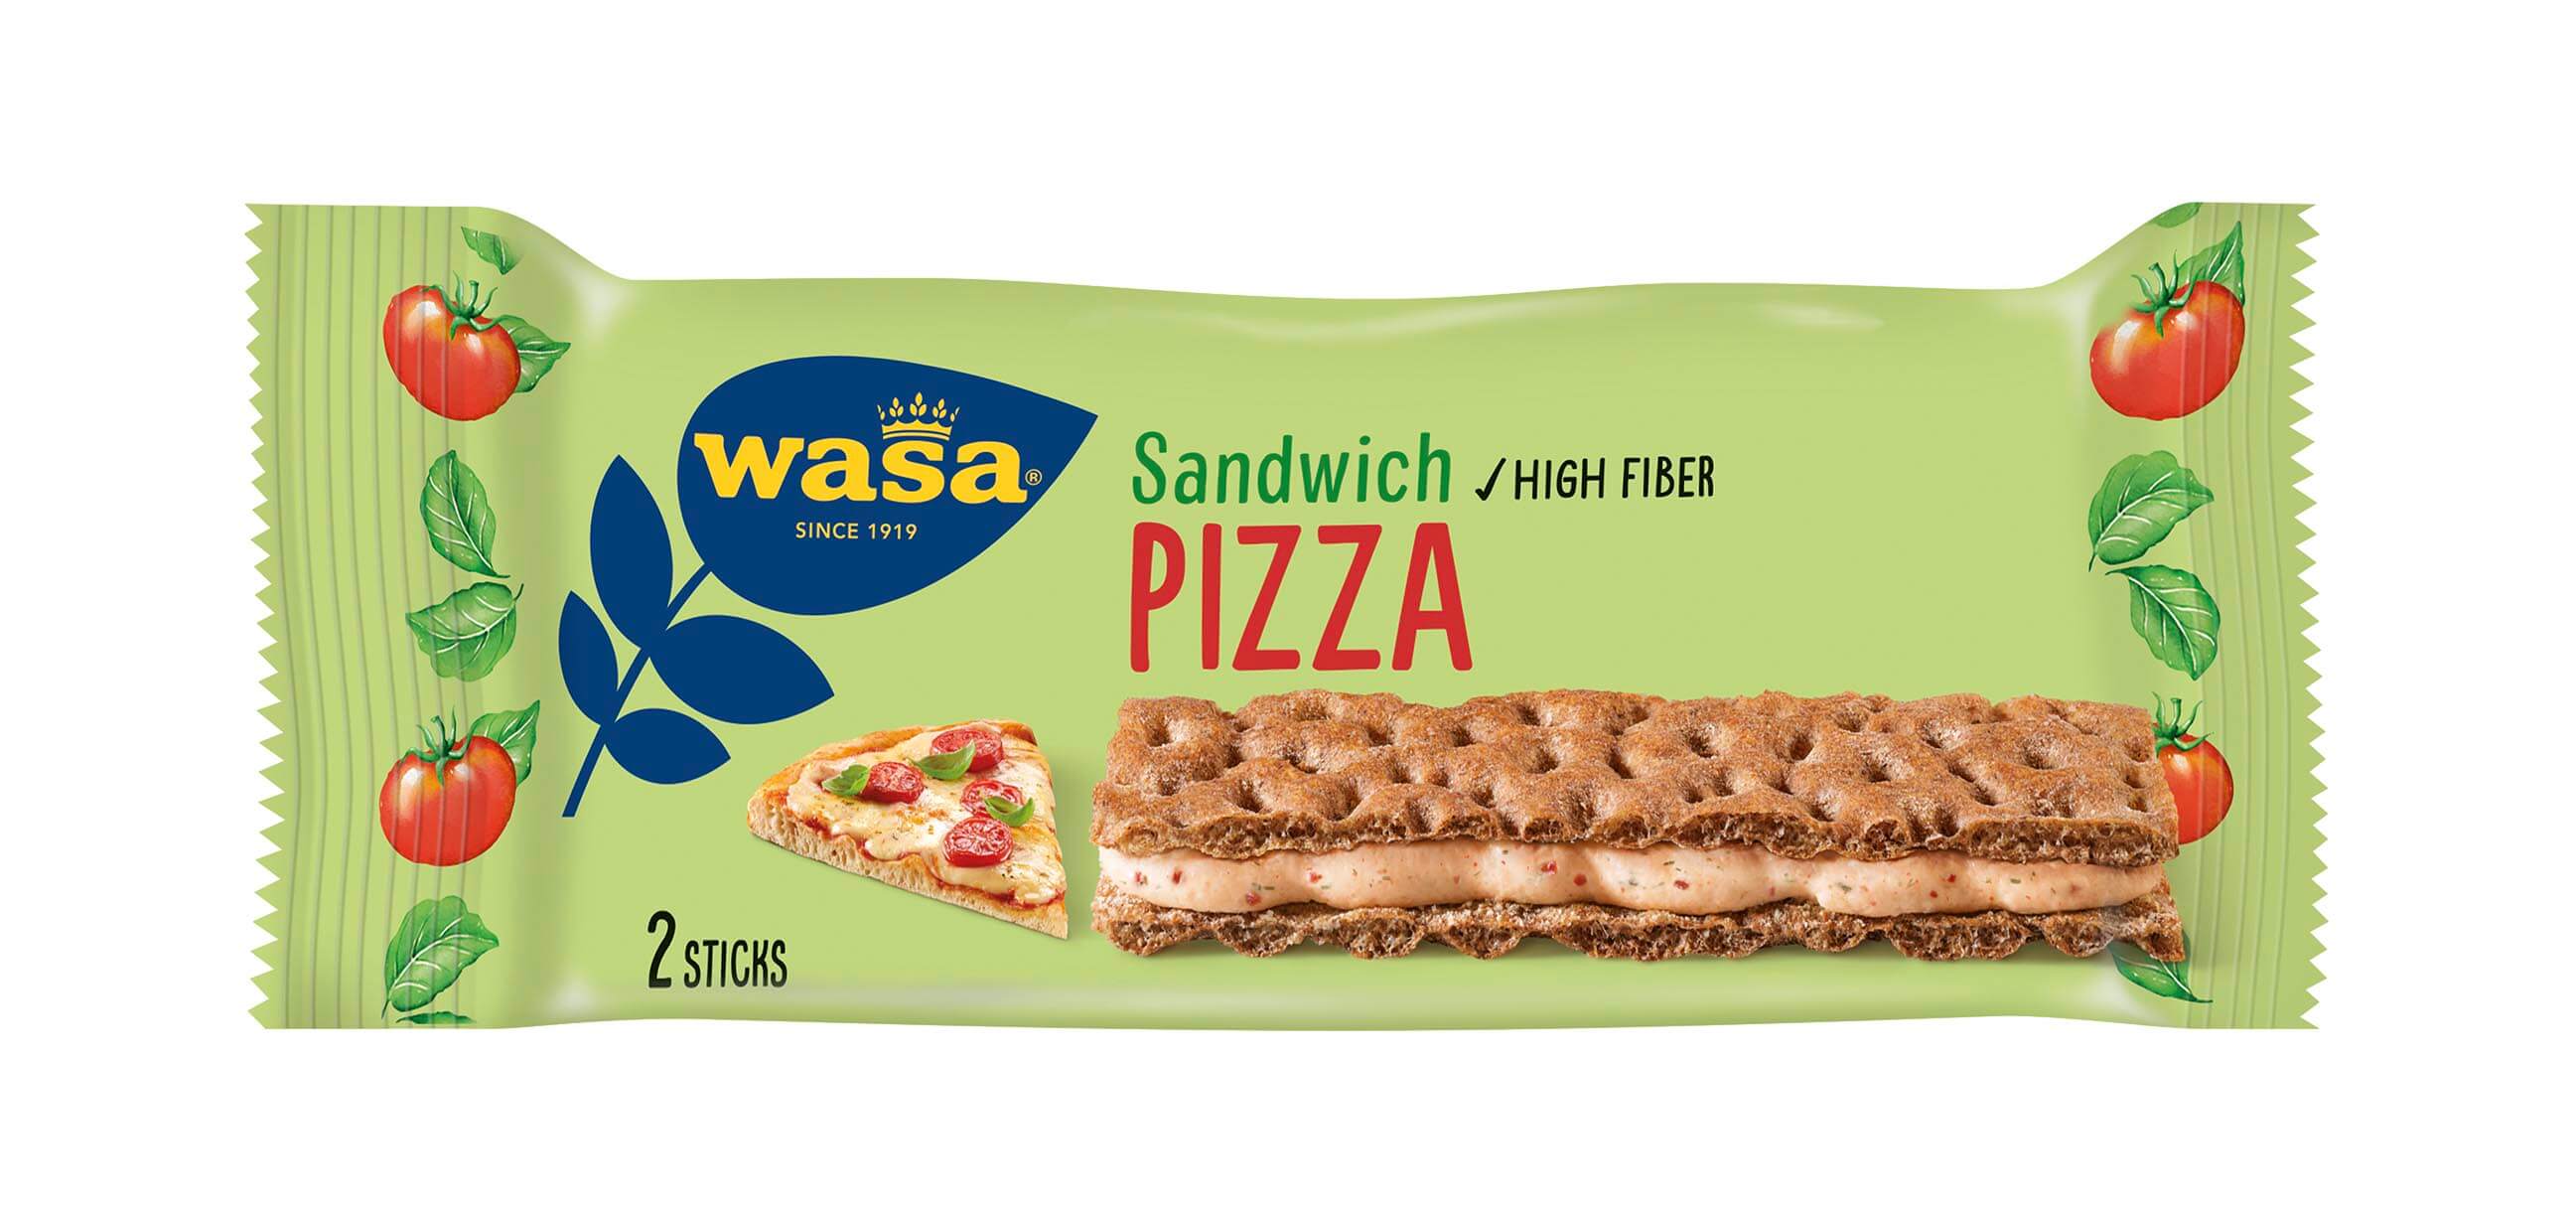 Wasa Sandwich Pizza - Upptäck det perfekta mellanmålet, krispigt och gott knäckebröd med krämig fyllning. Perfekt som mellanmål på språng och som snabba mellanmål efter skolan eller innan träning.